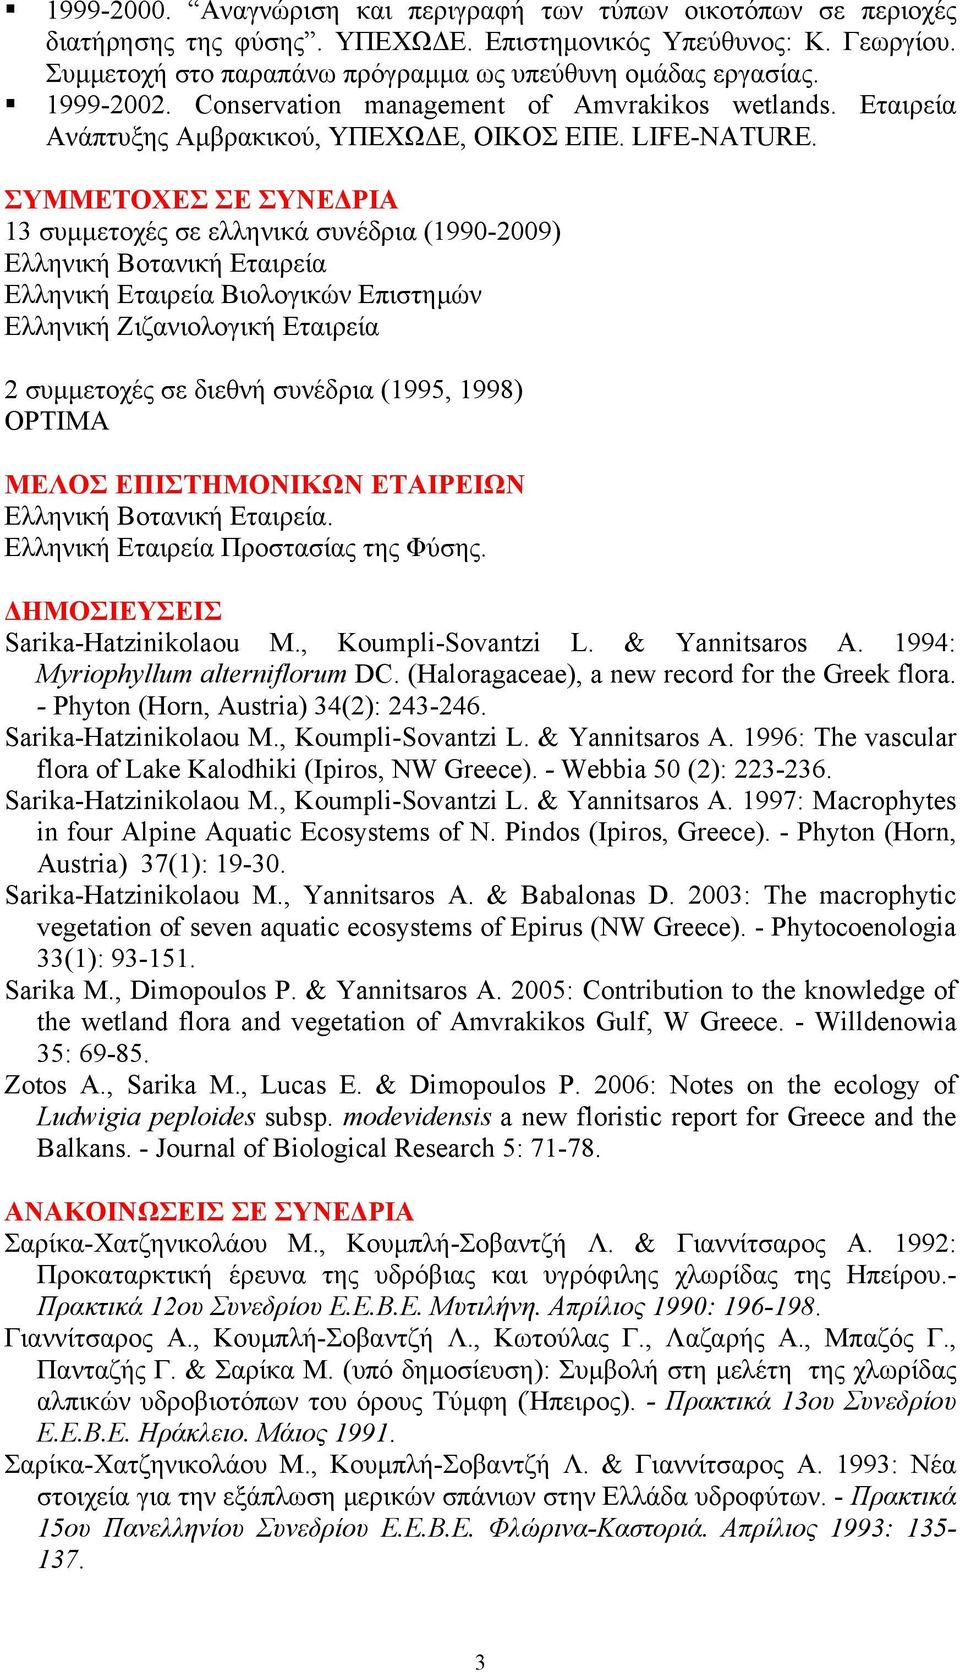 ΣΥΜΜΕΤΟΧΕΣ ΣΕ ΣΥΝΕΔΡΙΑ 13 συμμετοχές σε ελληνικά συνέδρια (1990-2009) Ελληνική Βοτανική Εταιρεία Ελληνική Εταιρεία Βιολογικών Επιστημών Ελληνική Ζιζανιολογική Εταιρεία 2 συμμετοχές σε διεθνή συνέδρια